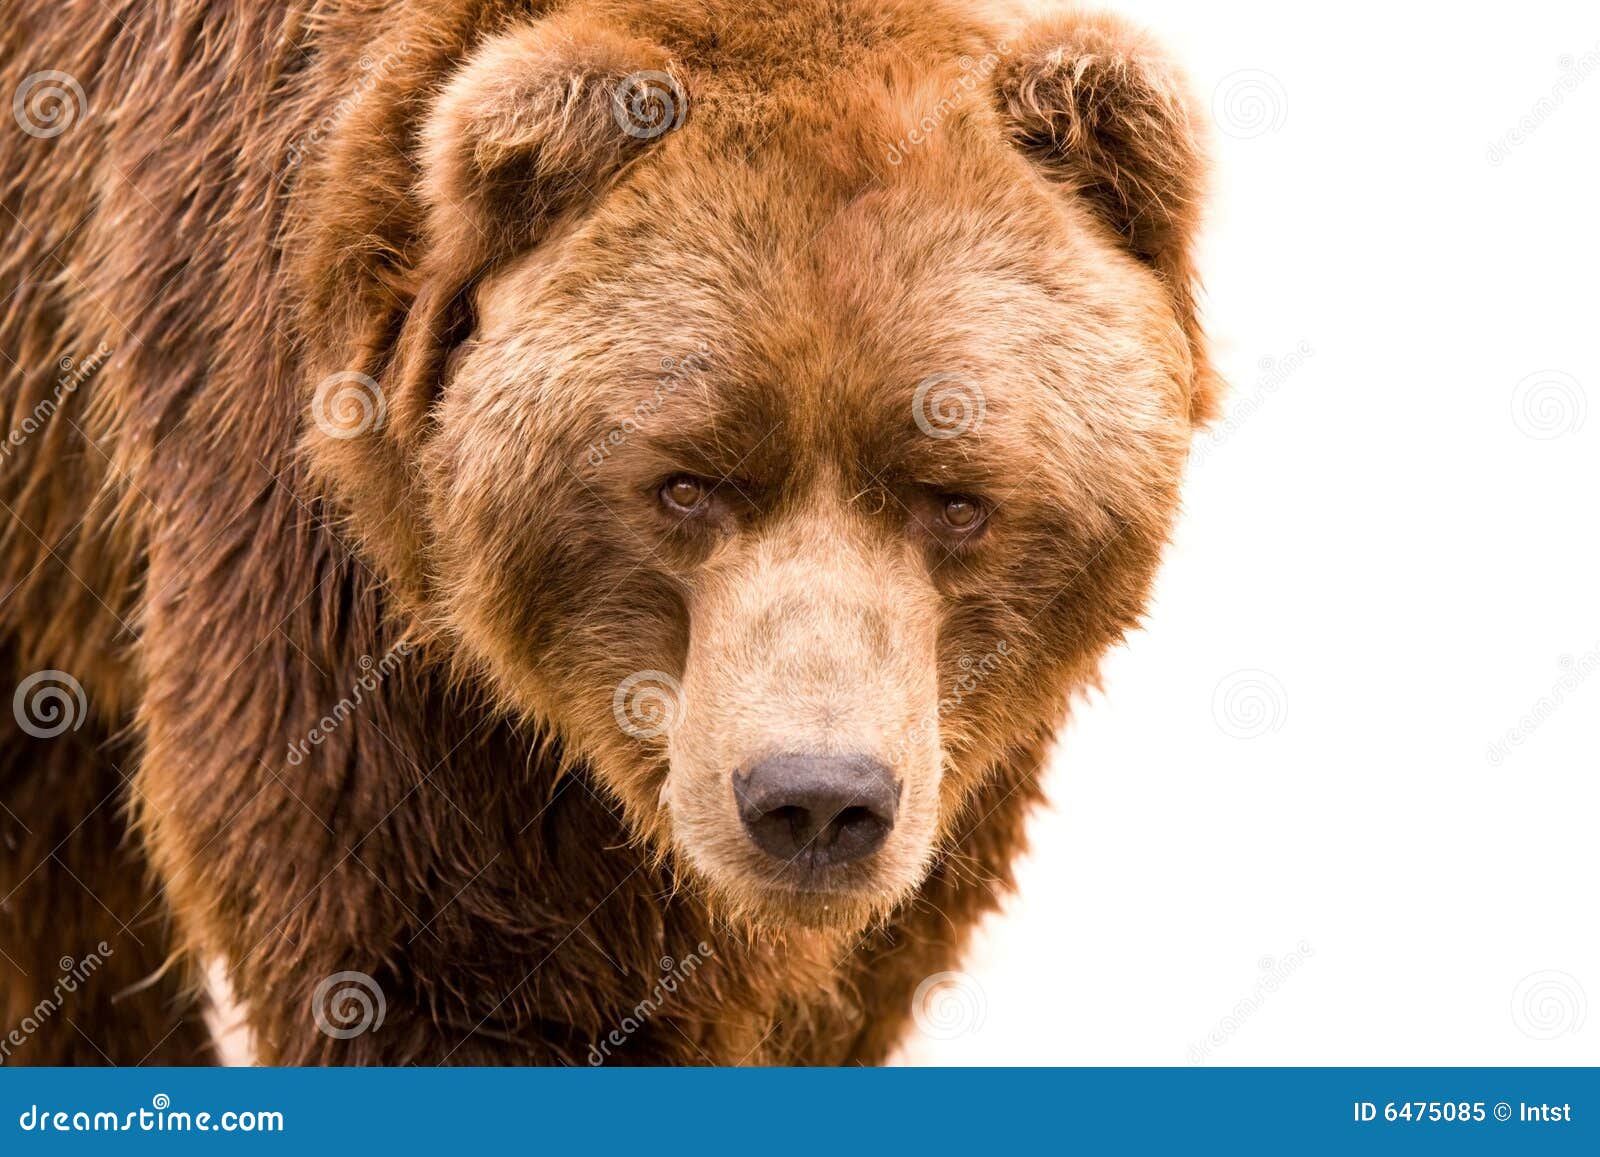 brown bear close-up portrait